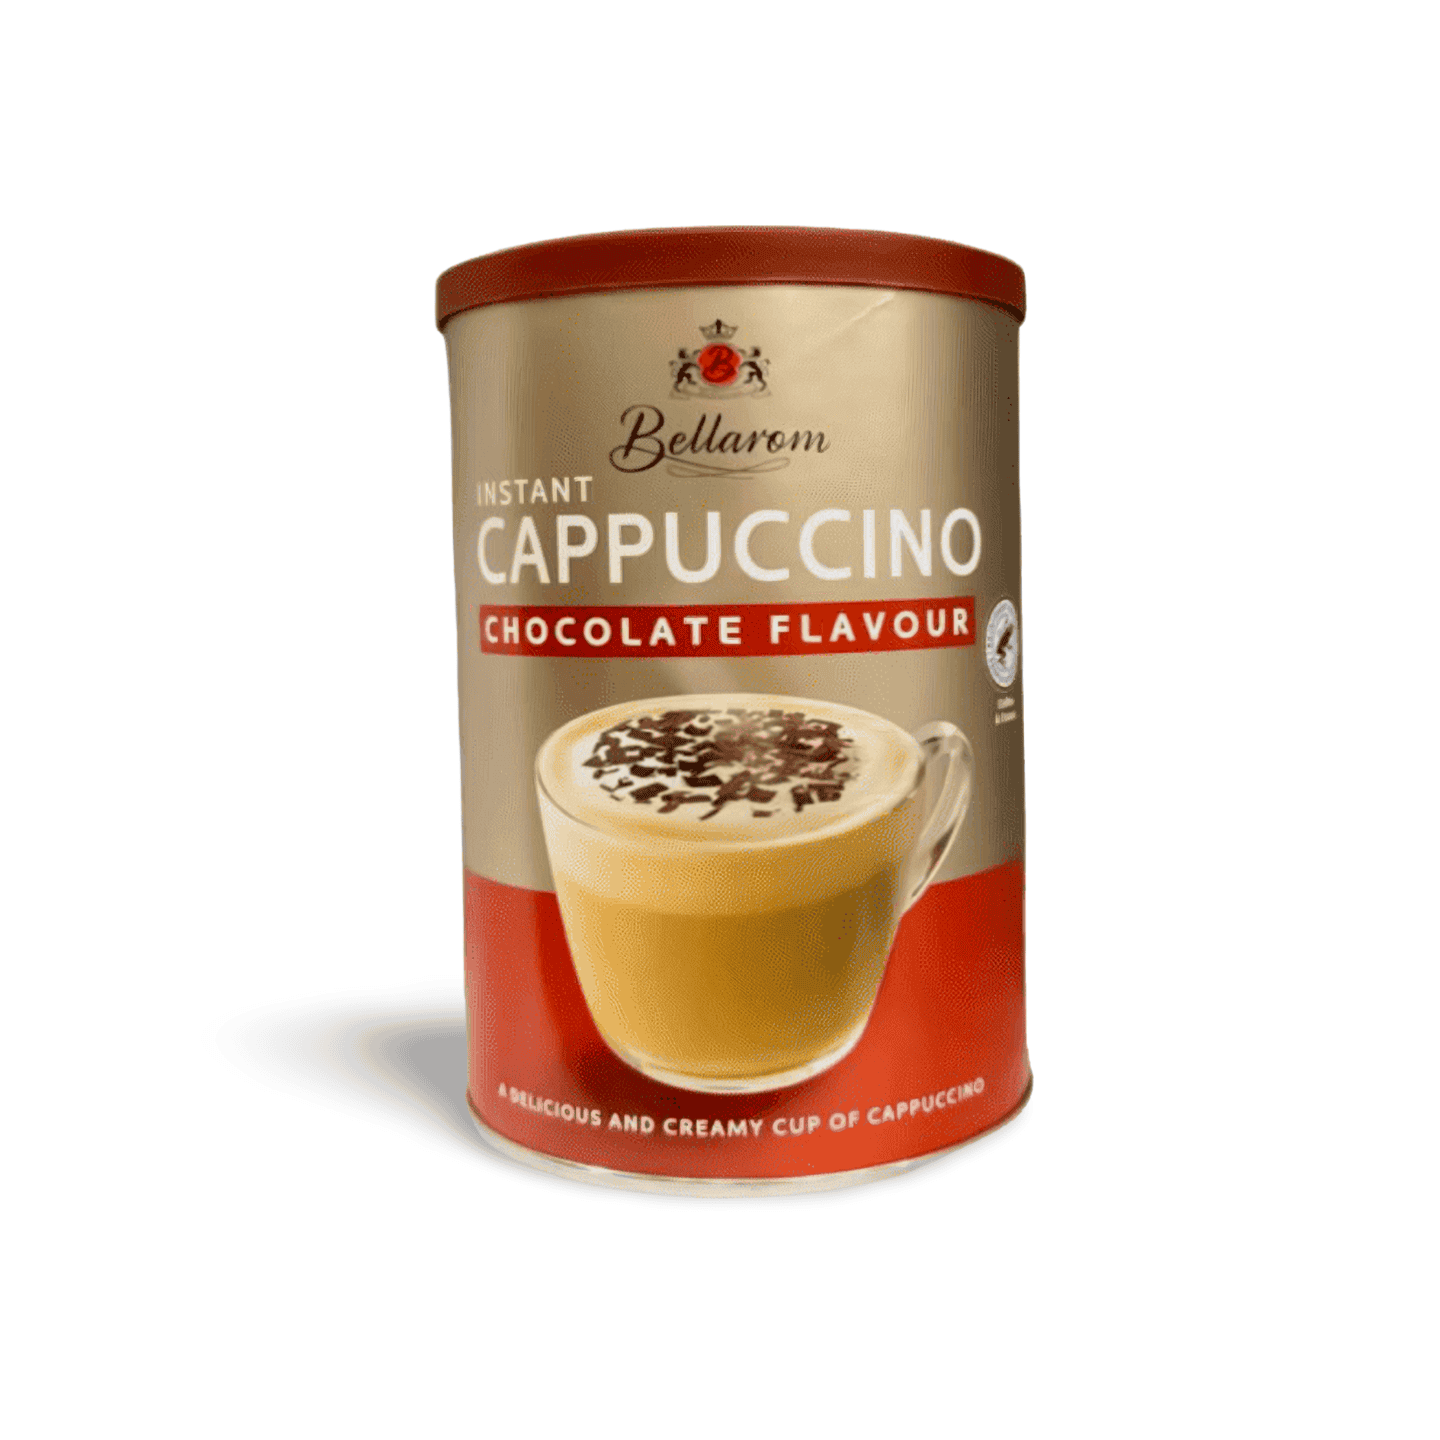 Bellarom Cappuccino Vanilla Coffee